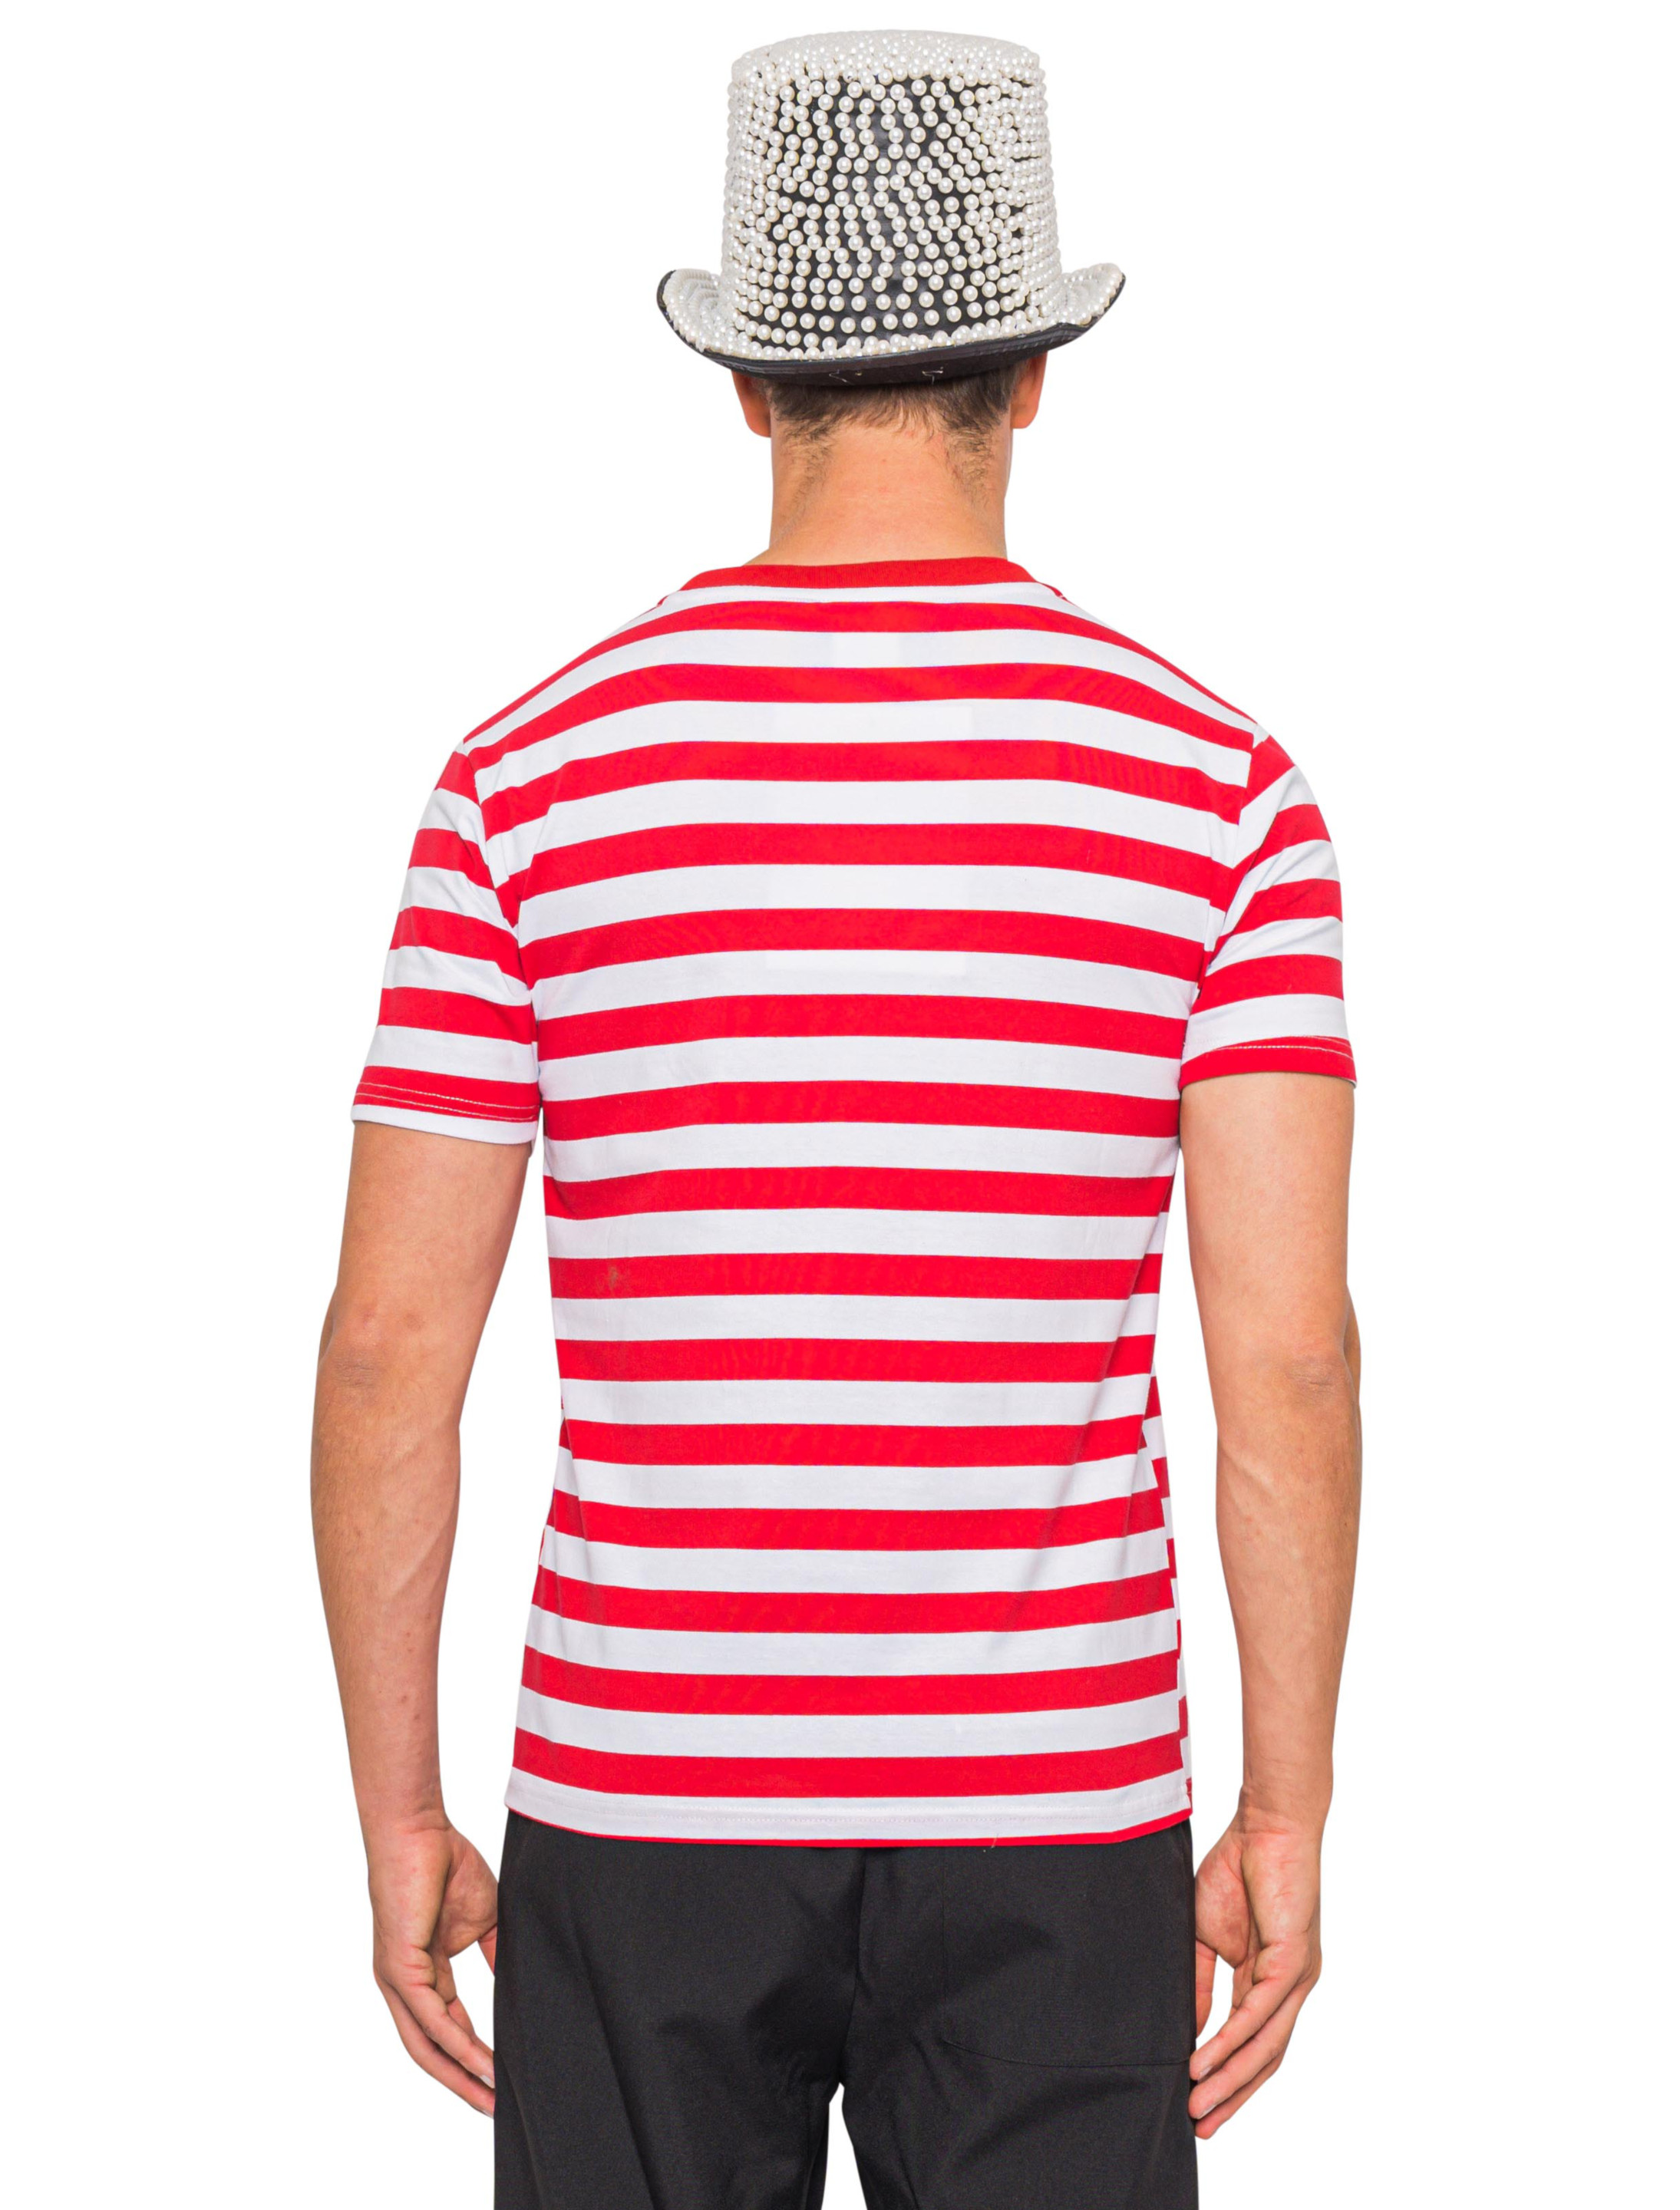 T-Shirt mit Dom Herren rot/weiß XL